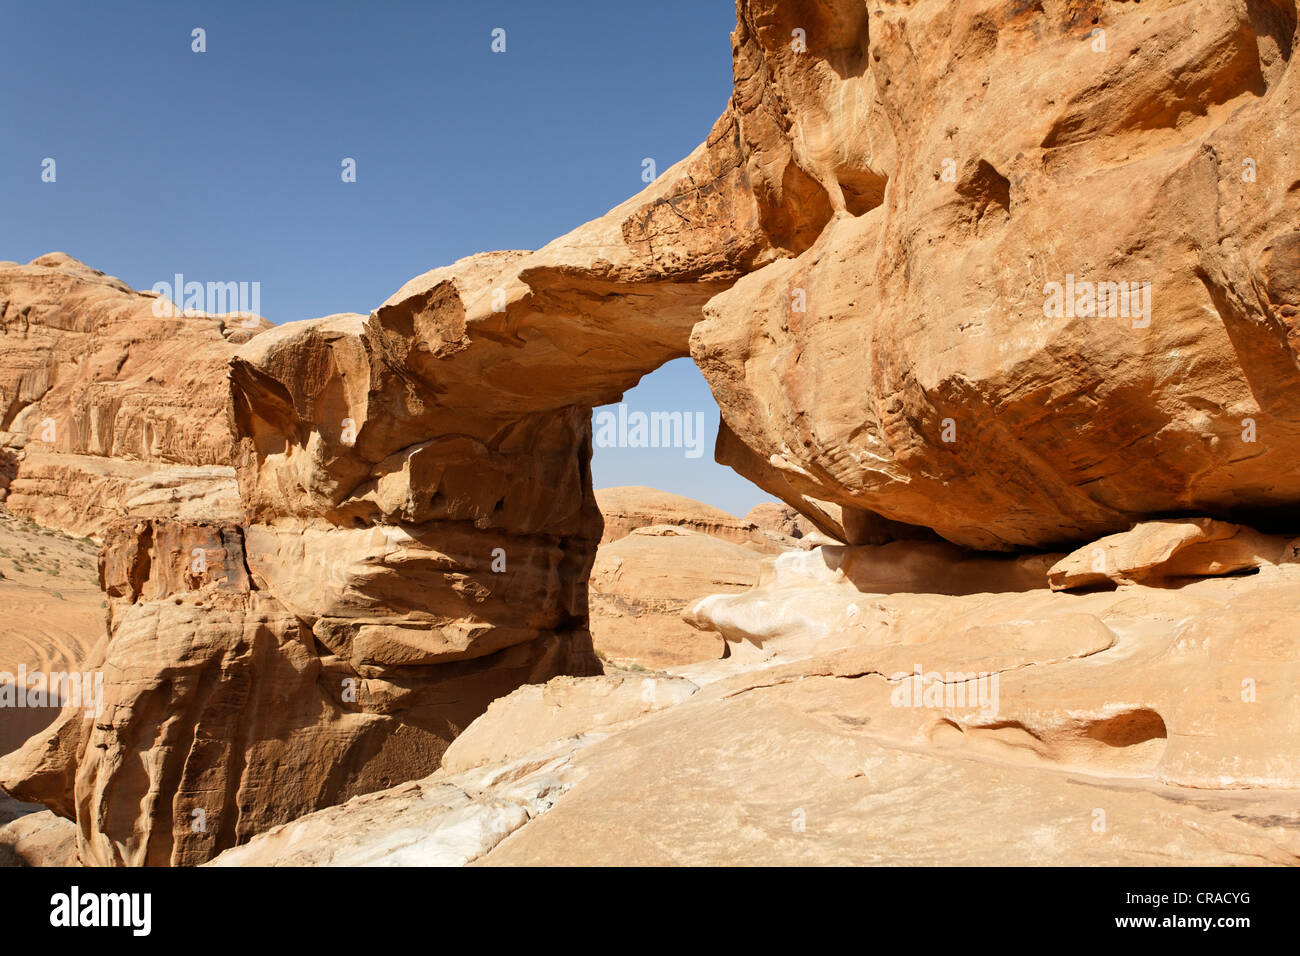 Ponte di Roccia di Um Fruth, deserto Wadi Rum, Regno Hascemita di Giordania, Medio Oriente e Asia Foto Stock